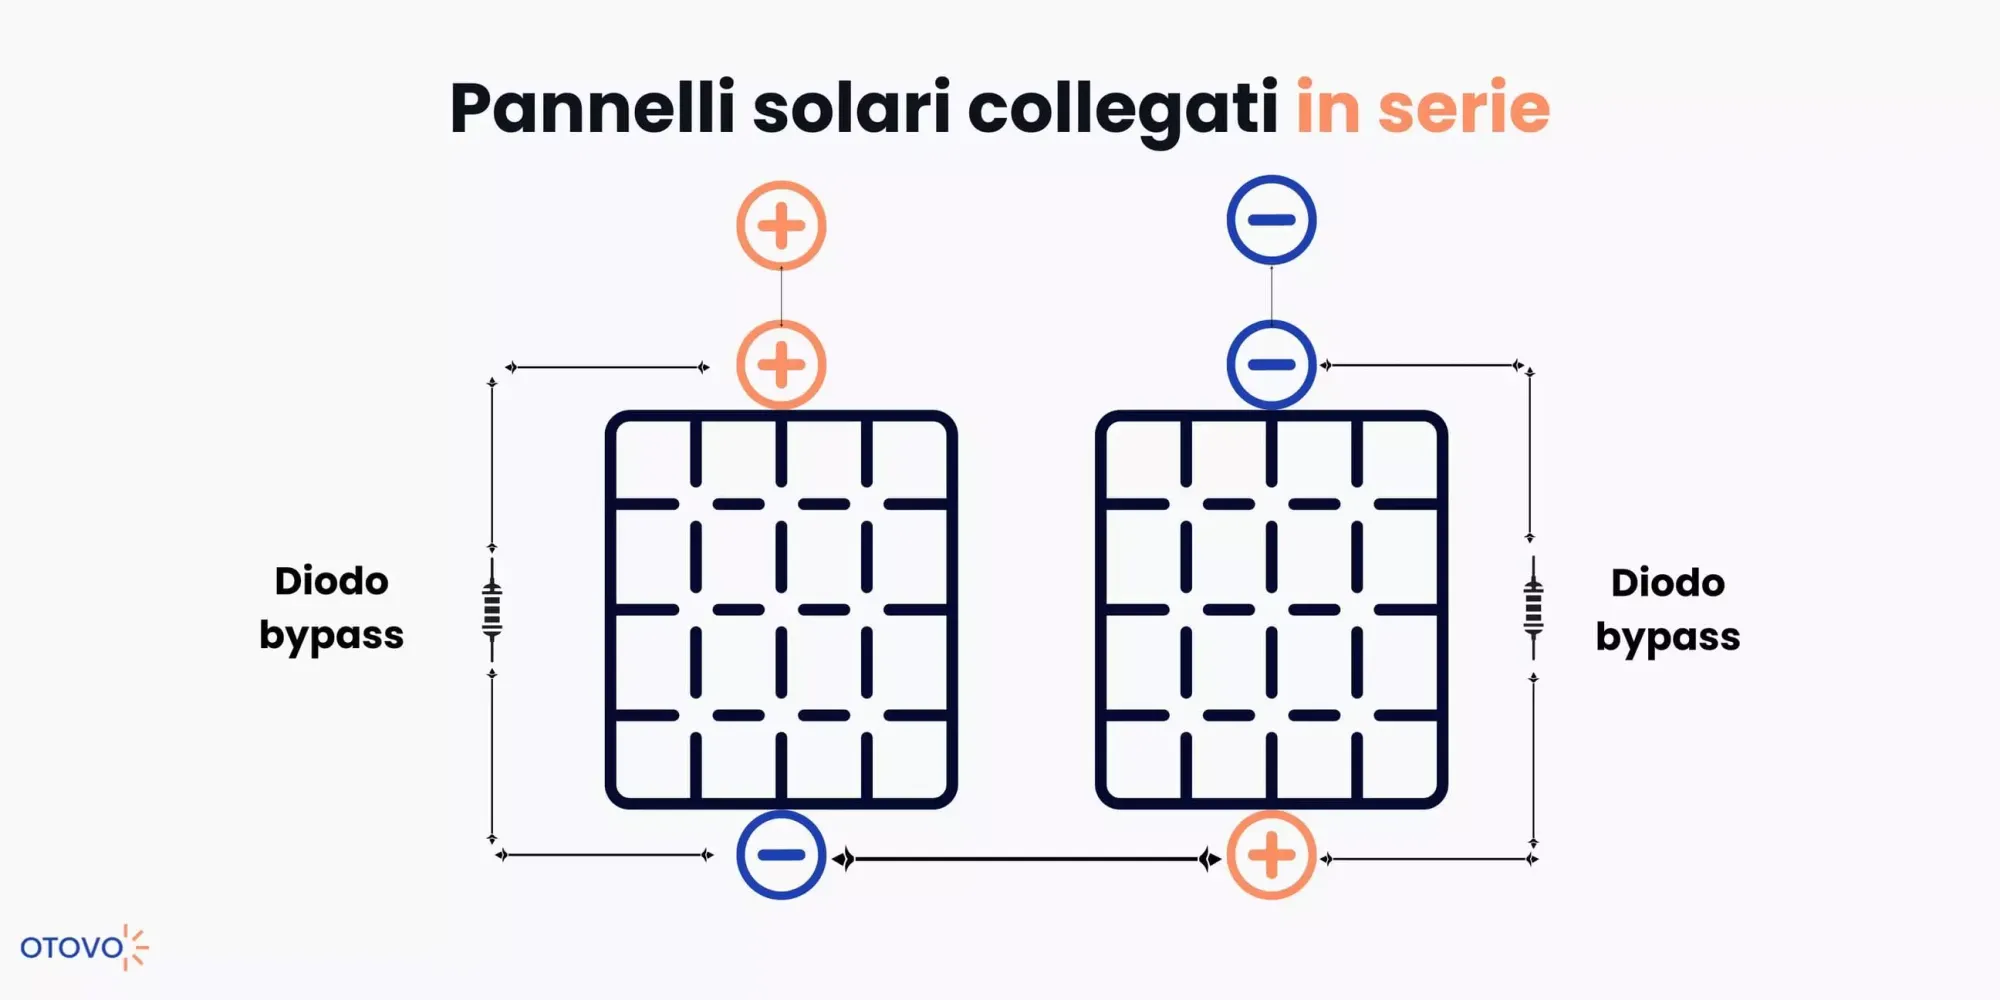 Pannelli solari collegati in serie